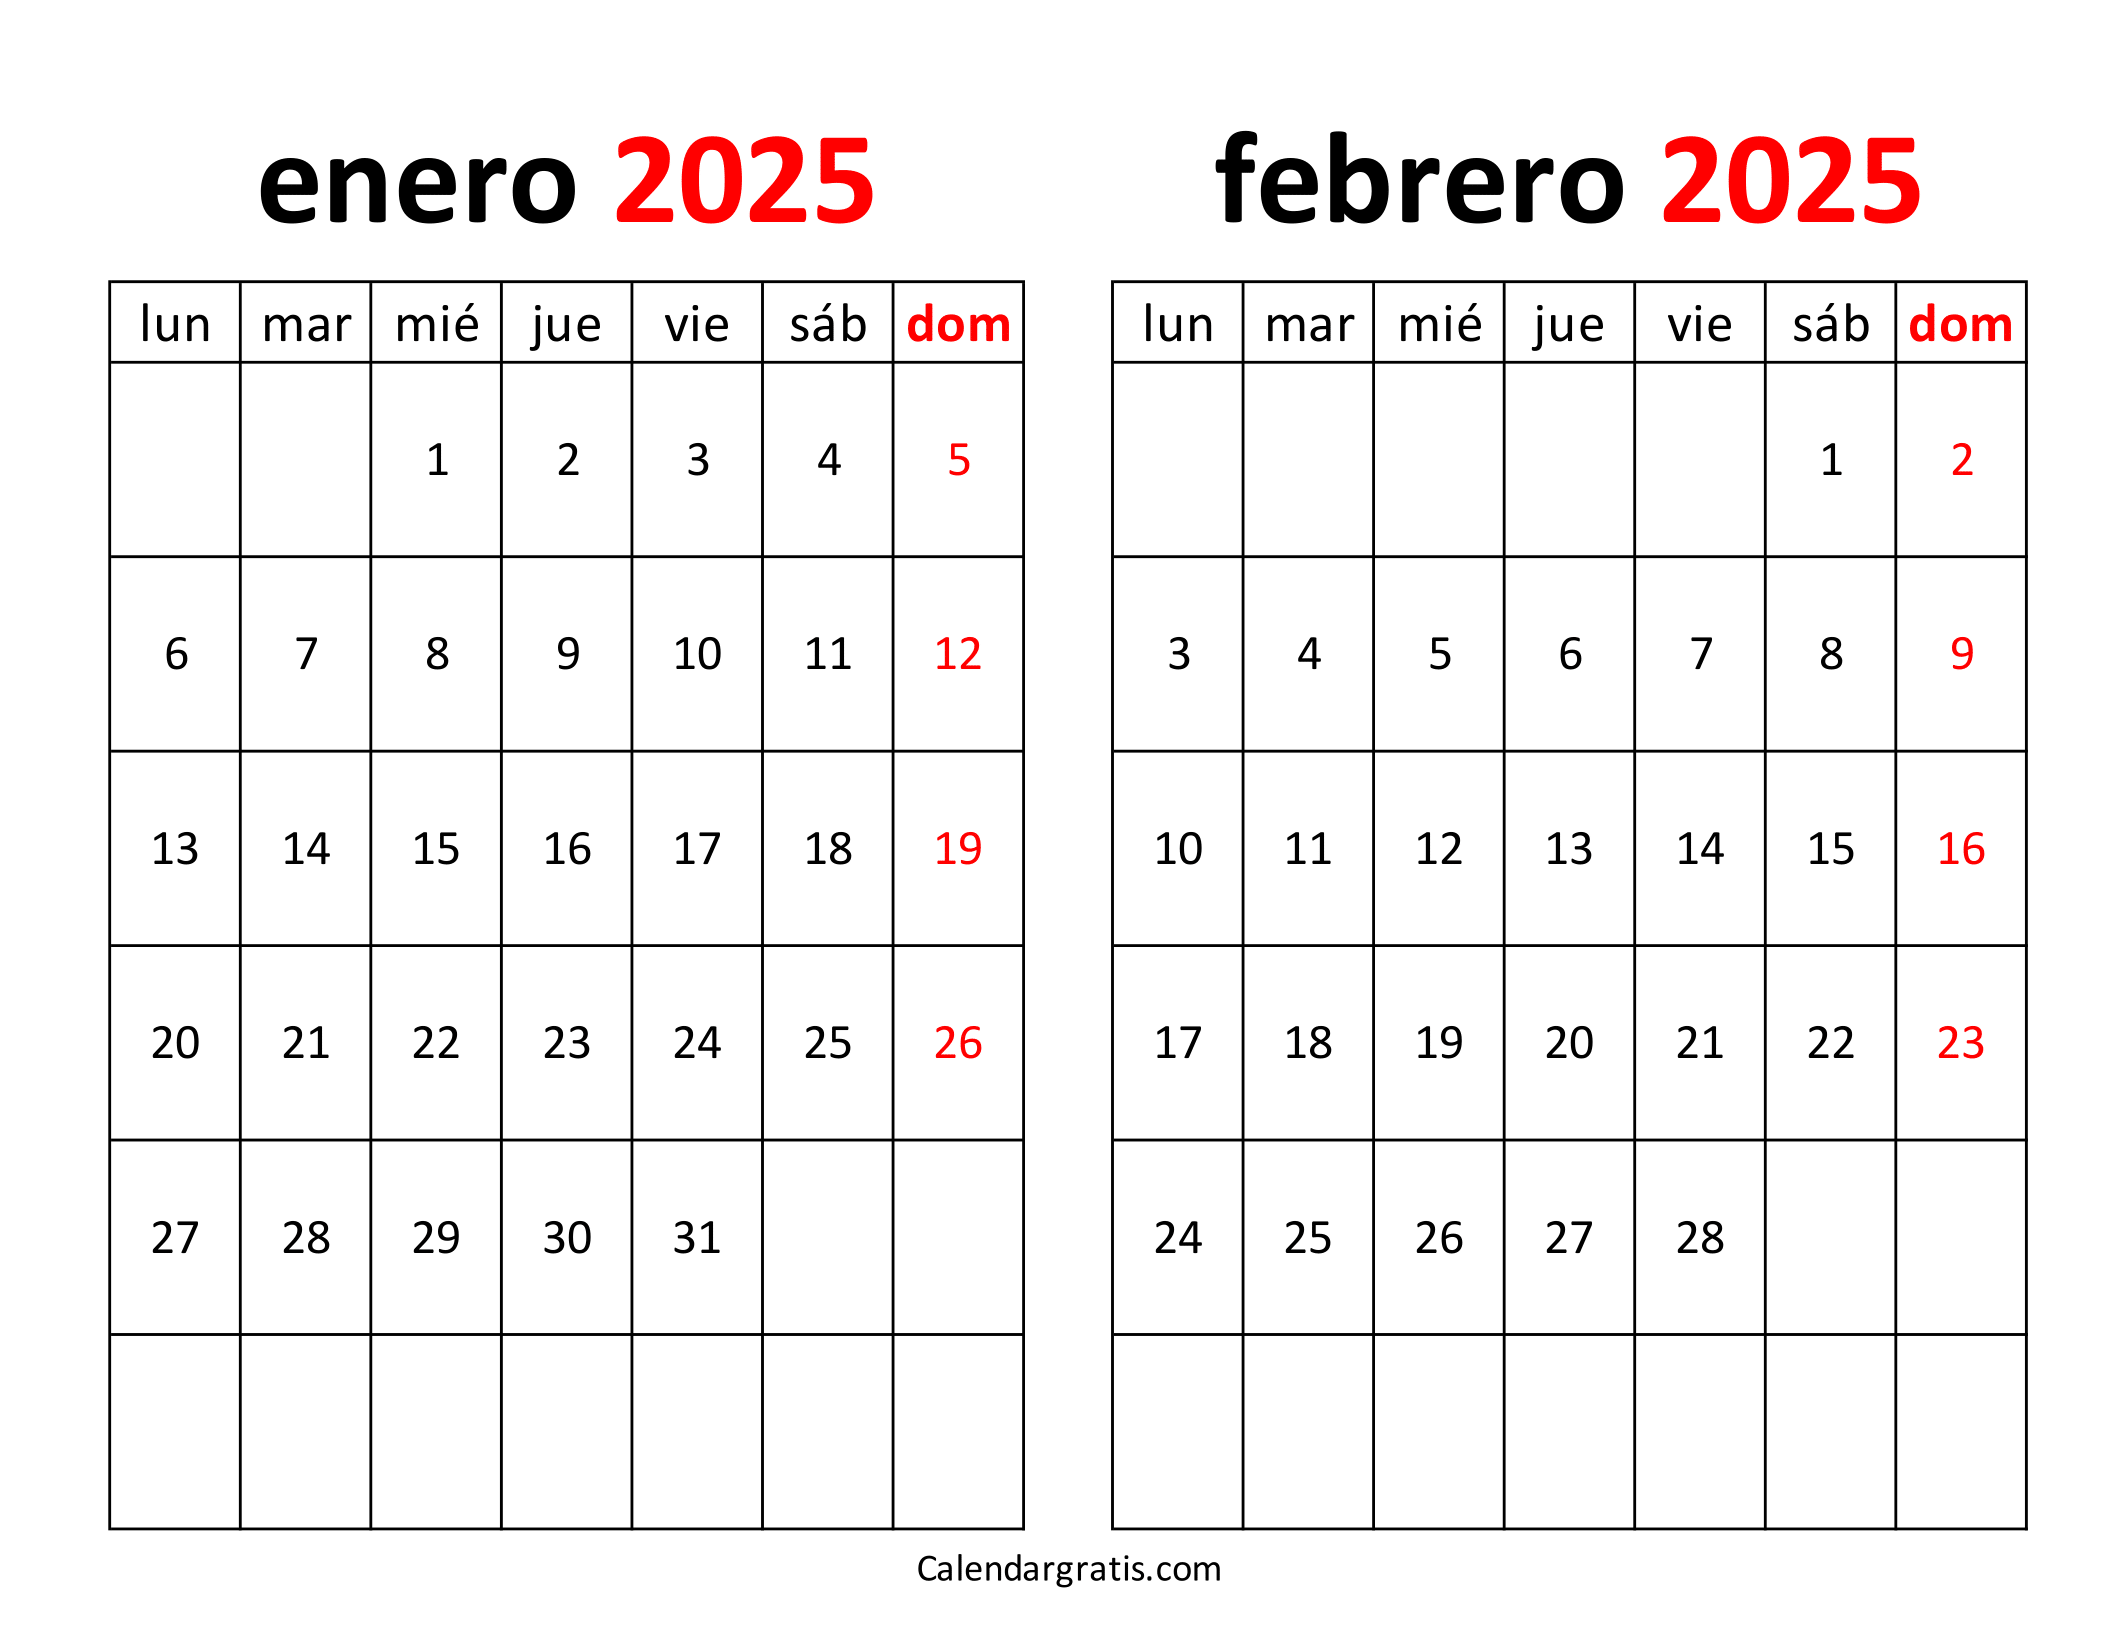 Calendario enero febrero 2025 para imprimir